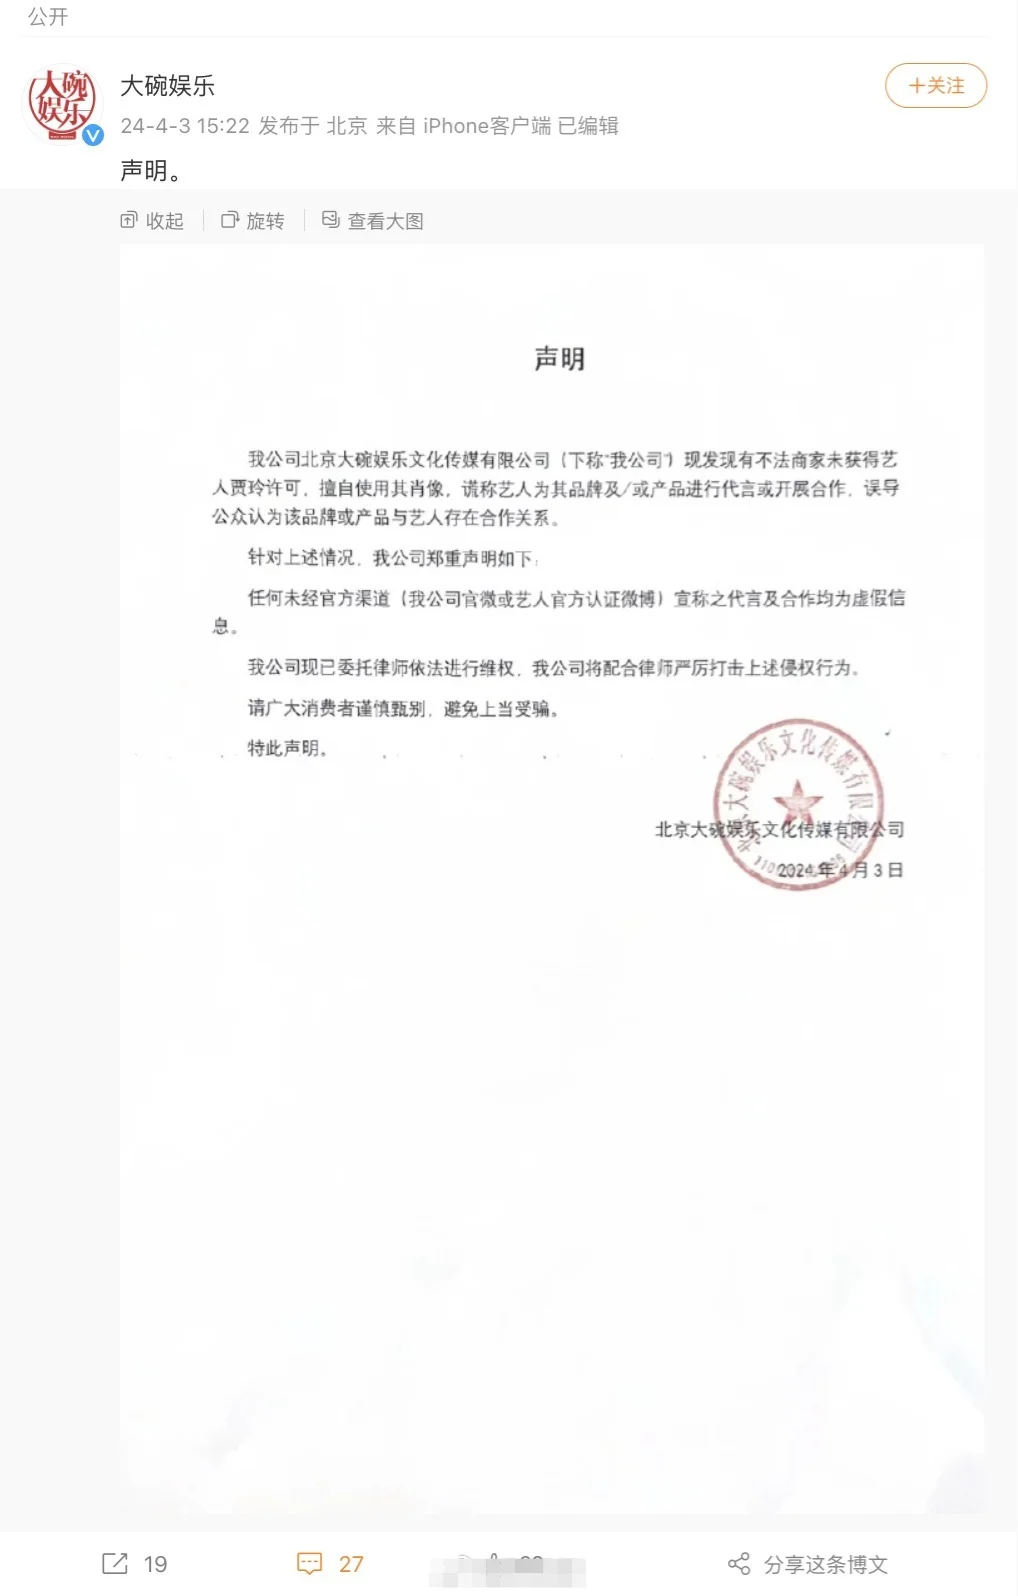 賈玲公司大碗娛樂發聲明 譴責侵犯肖像權行為